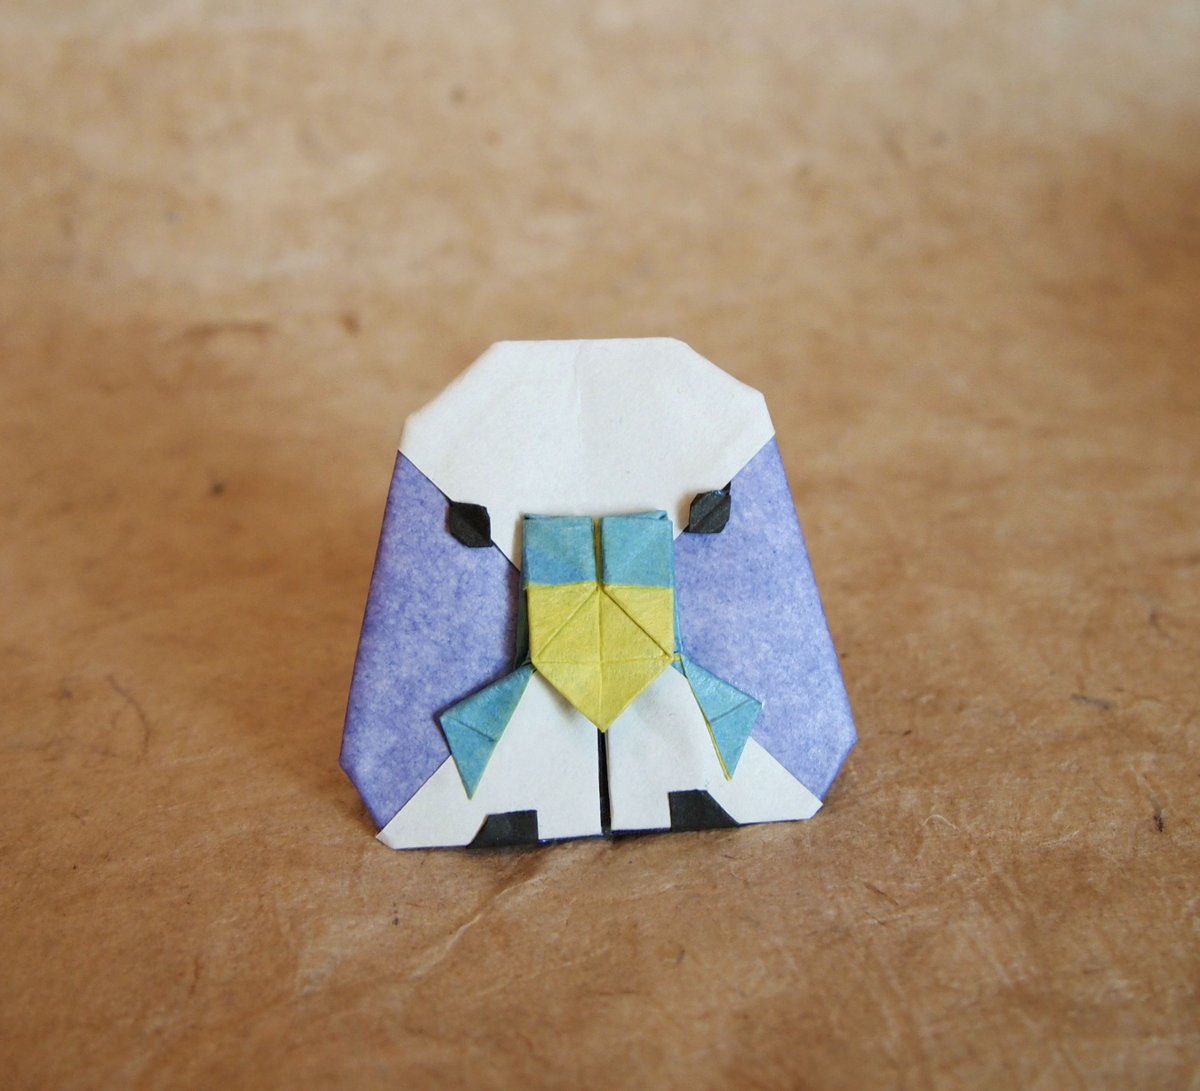 一匹柴犬 セキセイインコの顔 境洋次郎さん創作 折り わたし T Co 549wjisrsw かわいい 折ってみたかった作品 折り紙 折り紙作品 Origami